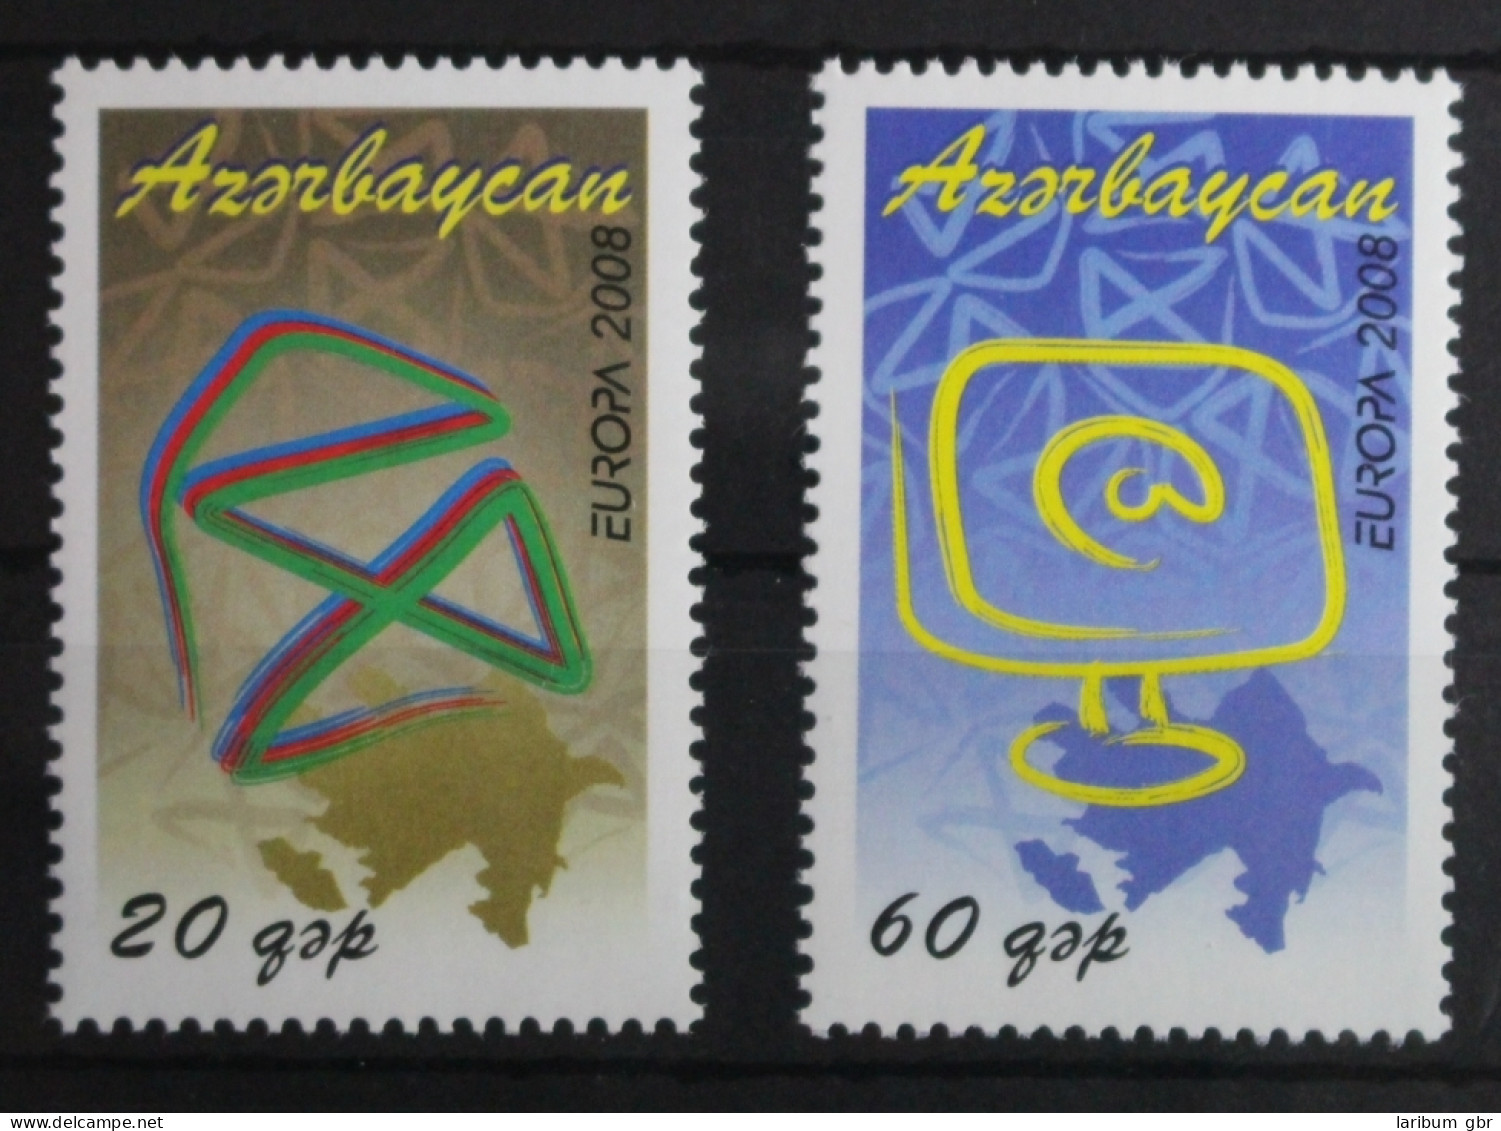 Aserbaidschan 715-716 Postfrisch Europa Der Brief #VQ895 - Azerbaijan